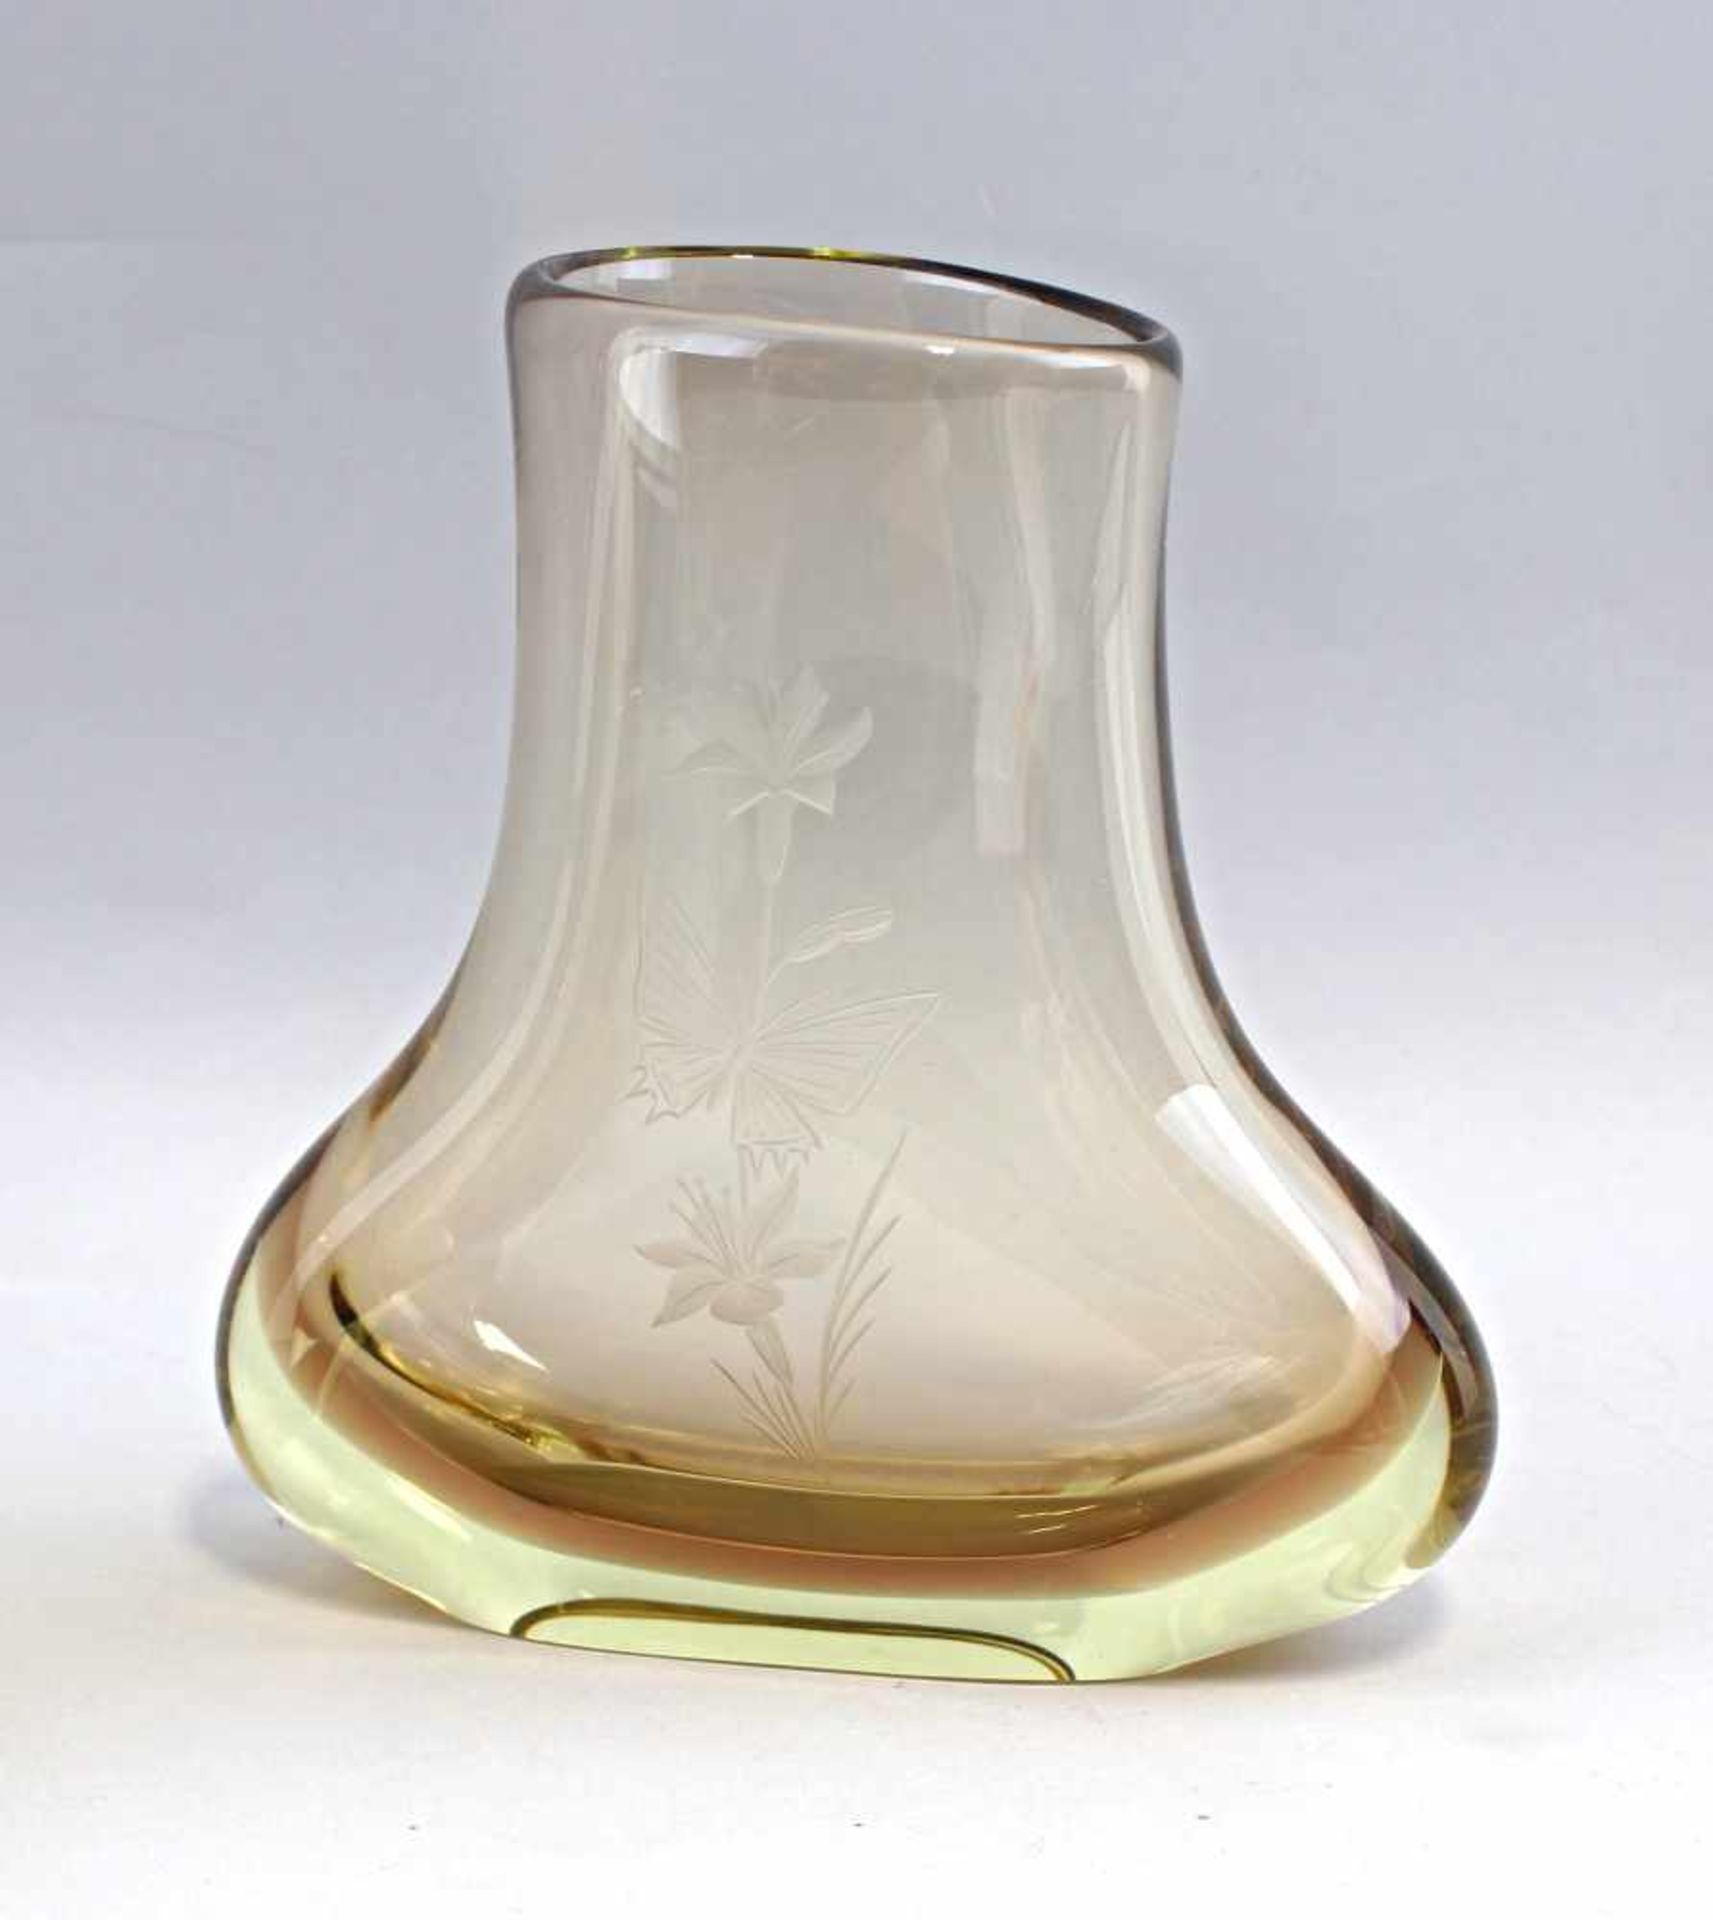 2 Vasen Muranodickes farbloses Glas braun unterfangen, handbeschliffen, plan geschliffener Boden, - Image 2 of 3